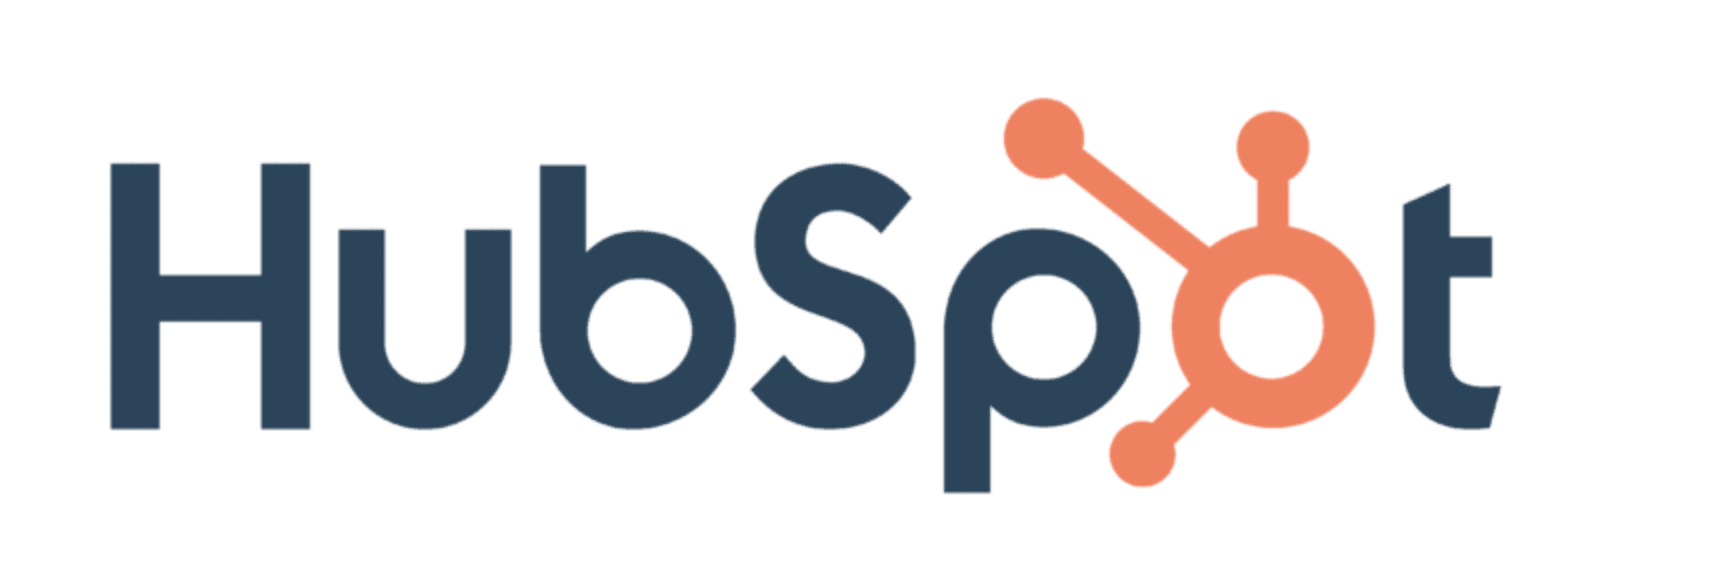 Hubspot_logo.png